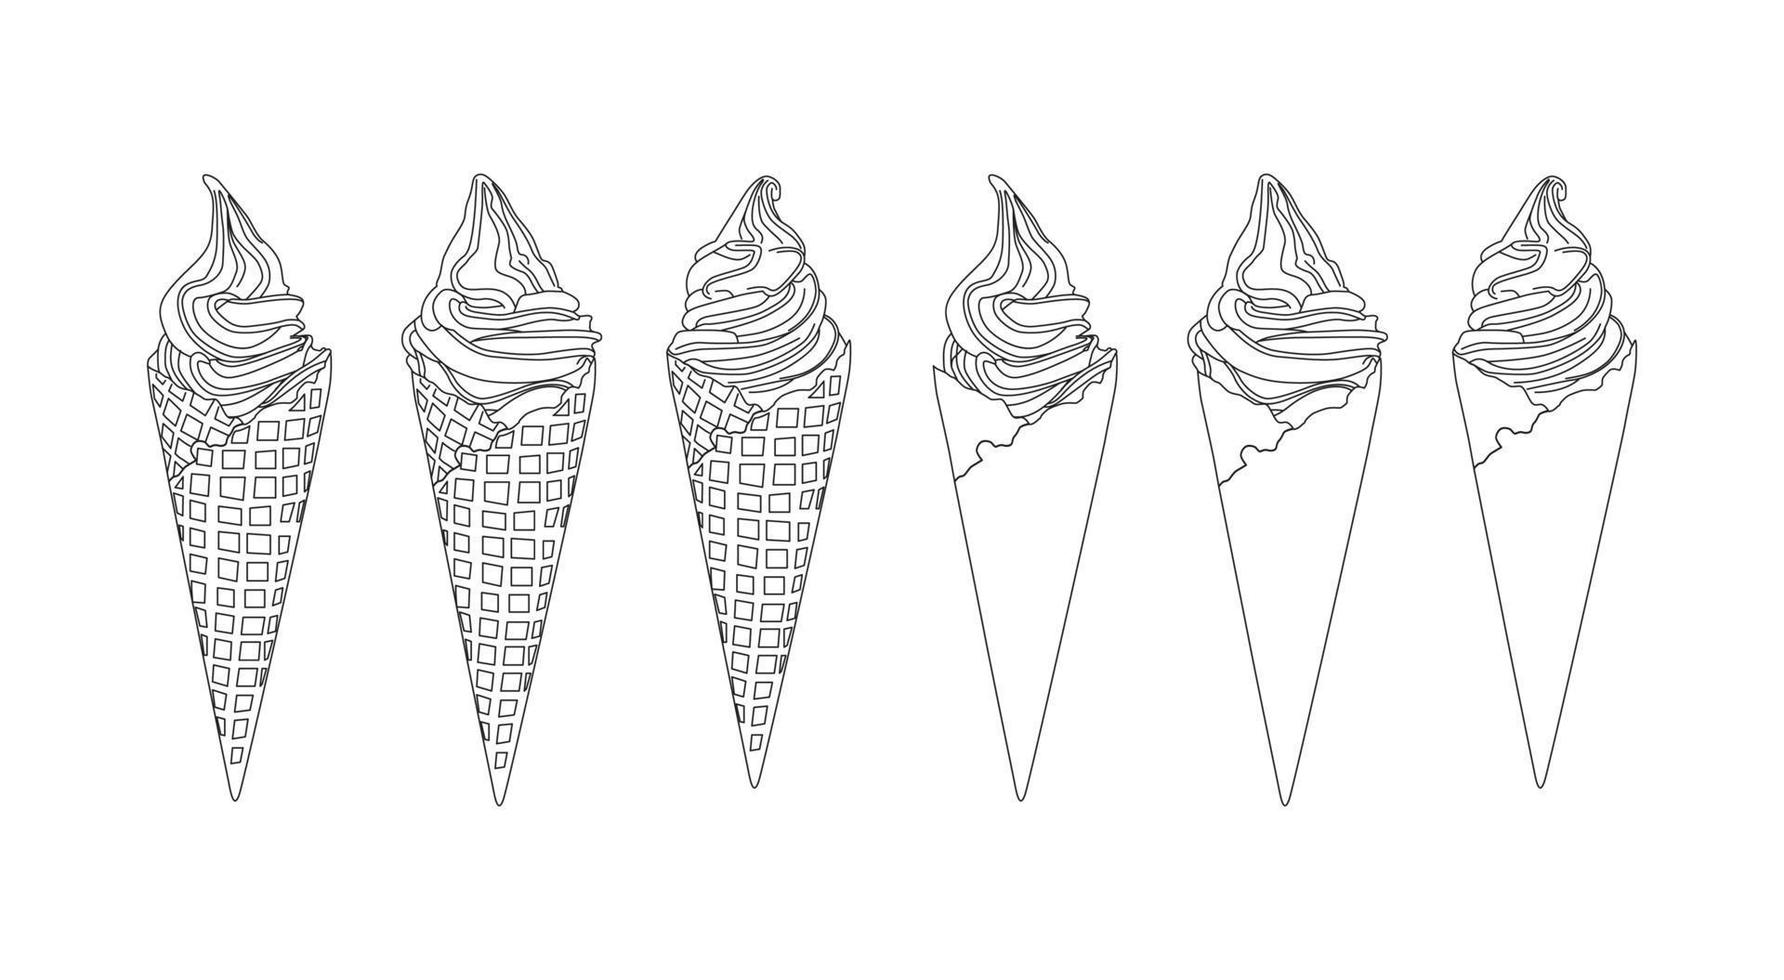 softserve outline vector sobre fondo blanco para menú o publicidad. helado con tres formas